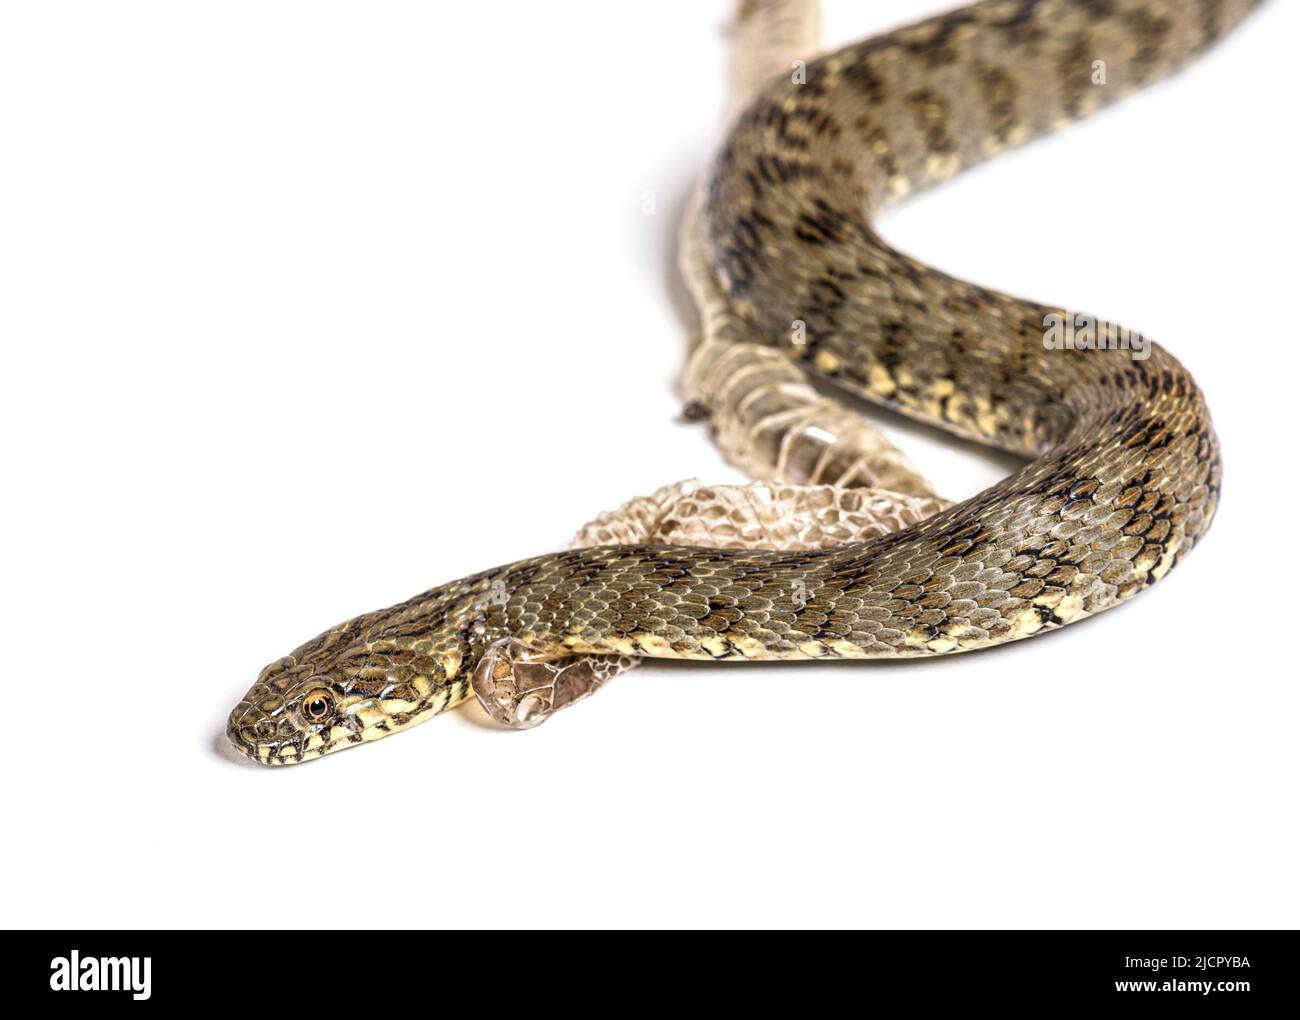 Serpent d'eau Viperine, Natrix maura, peau de excrétion mue UK, serpent non venimeux et semi-aquatique, isolé sur blanc Banque D'Images